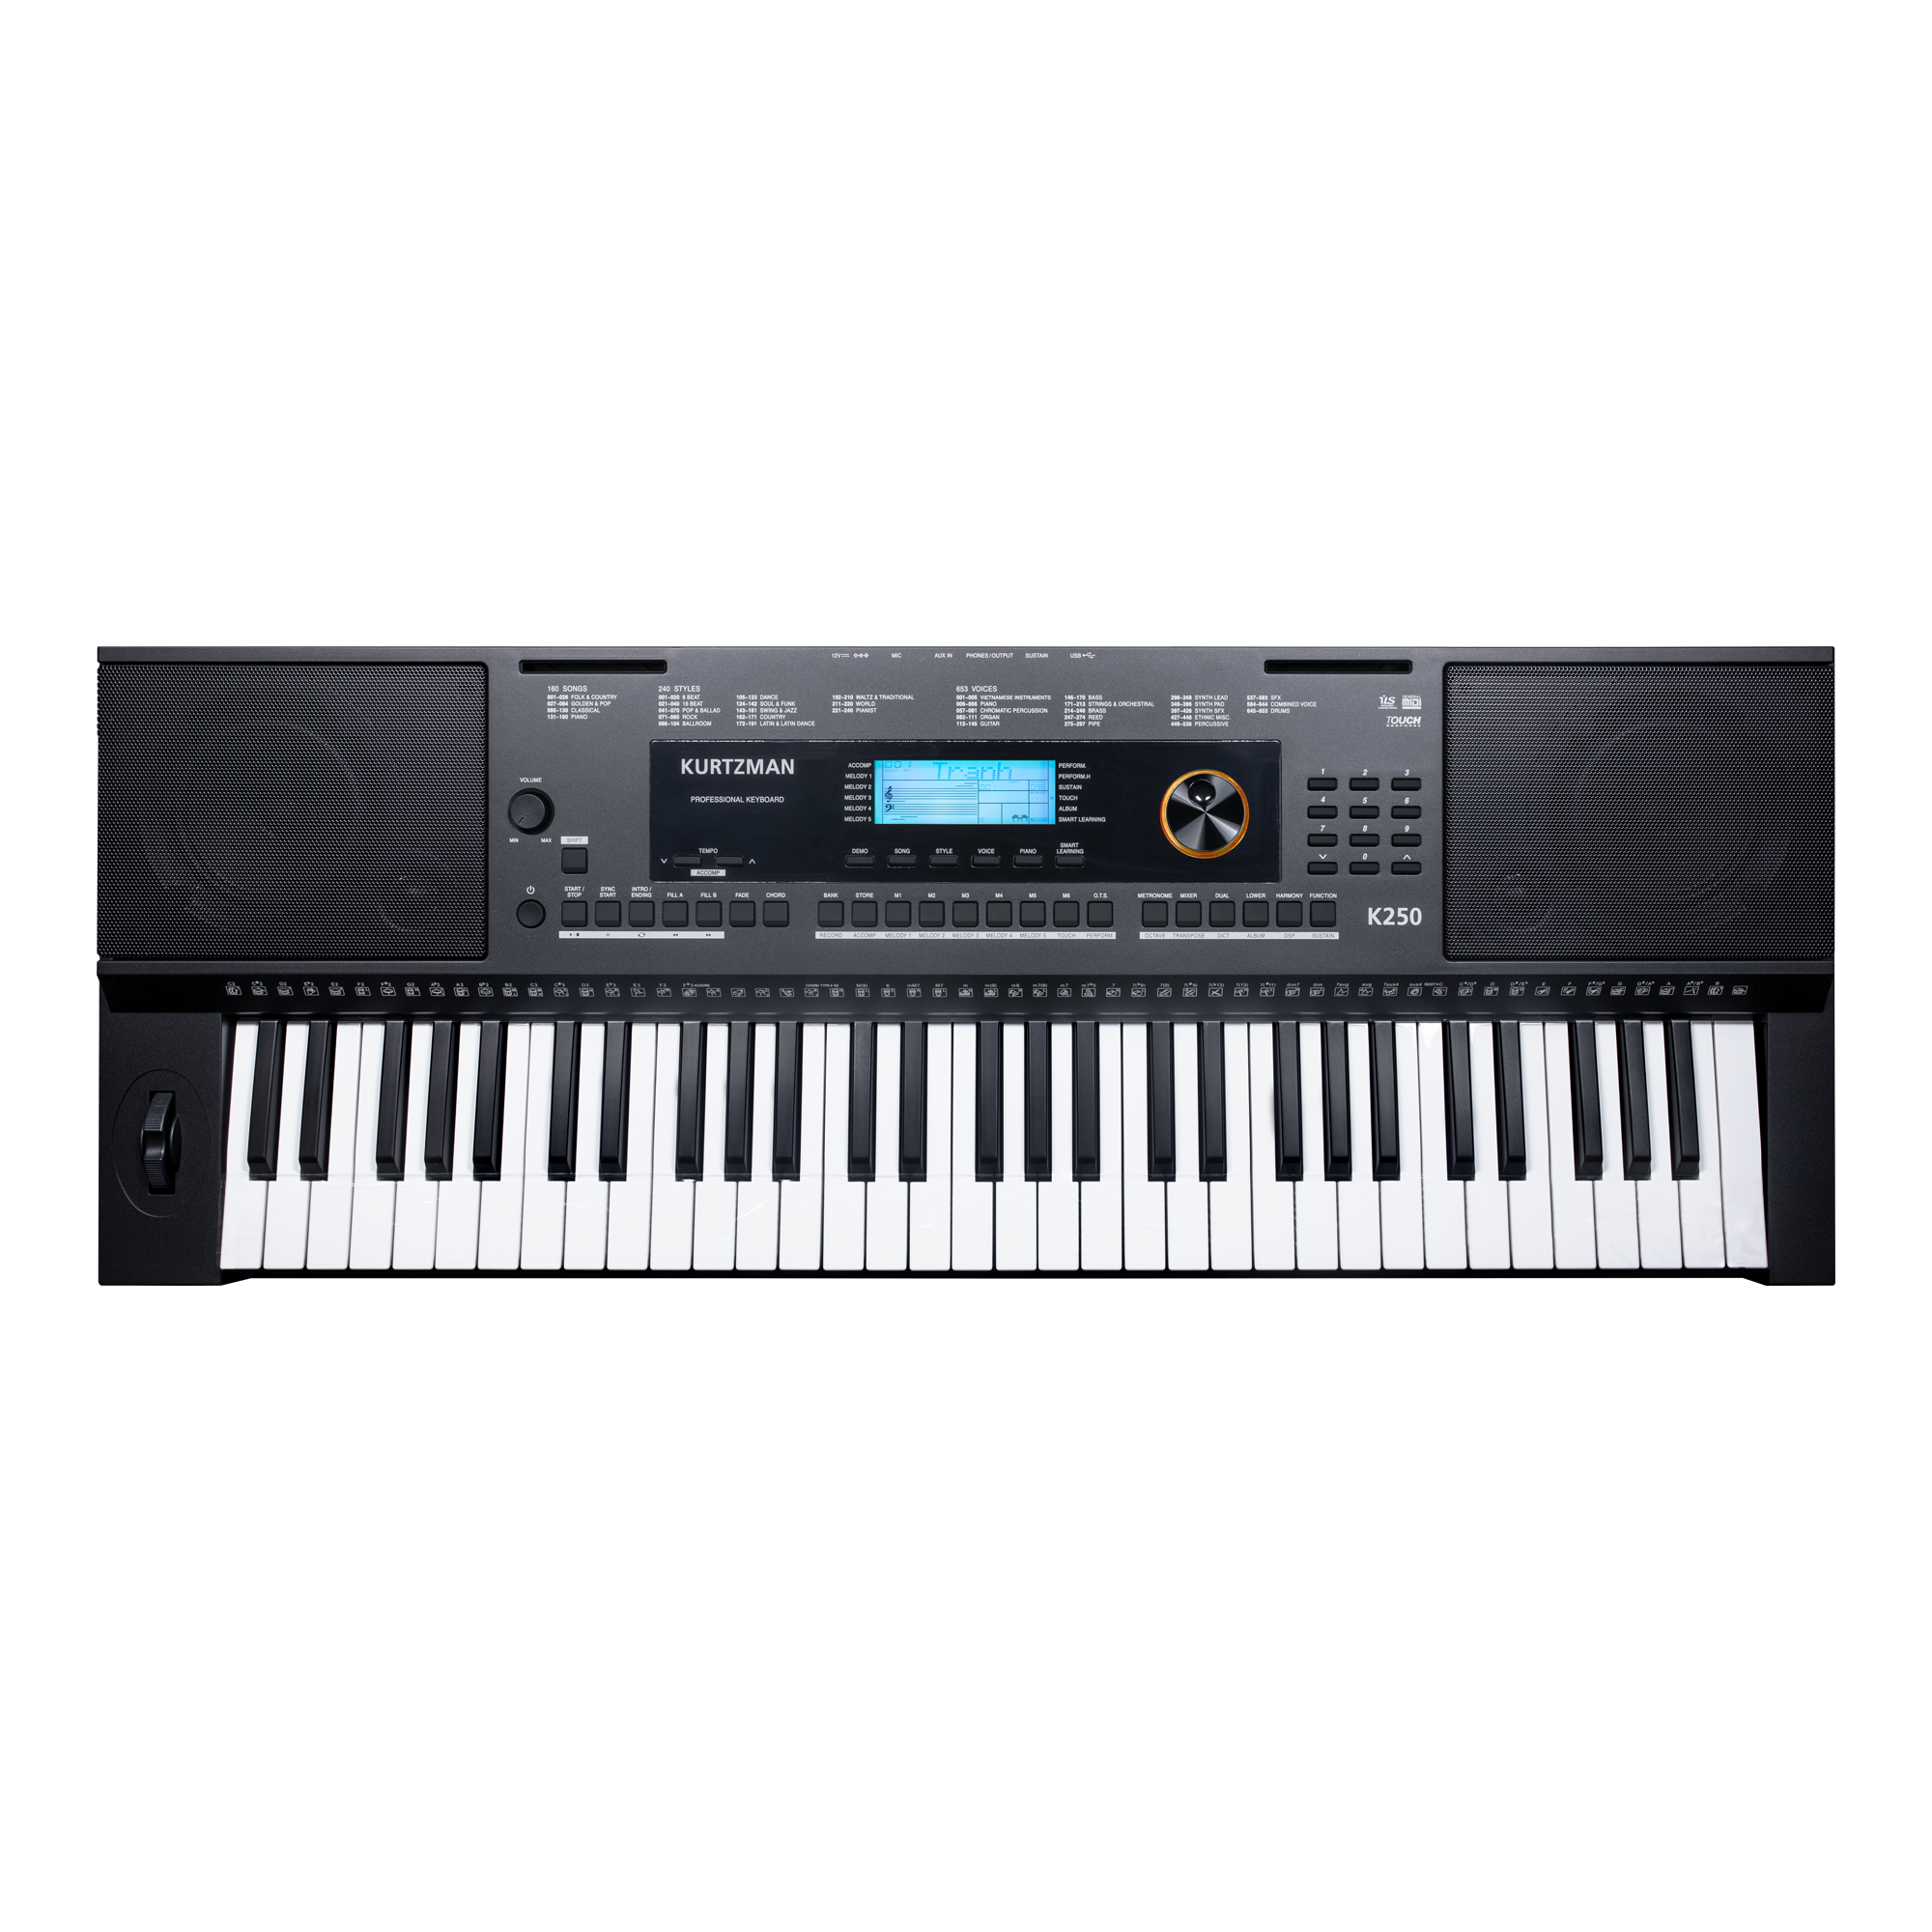 Đàn Organ điện tử/ Portable Keyboard - Kzm Kurtzman K250 - Perfect for Learning & Performing - Màu đen (BL) - Hàng chính hãng